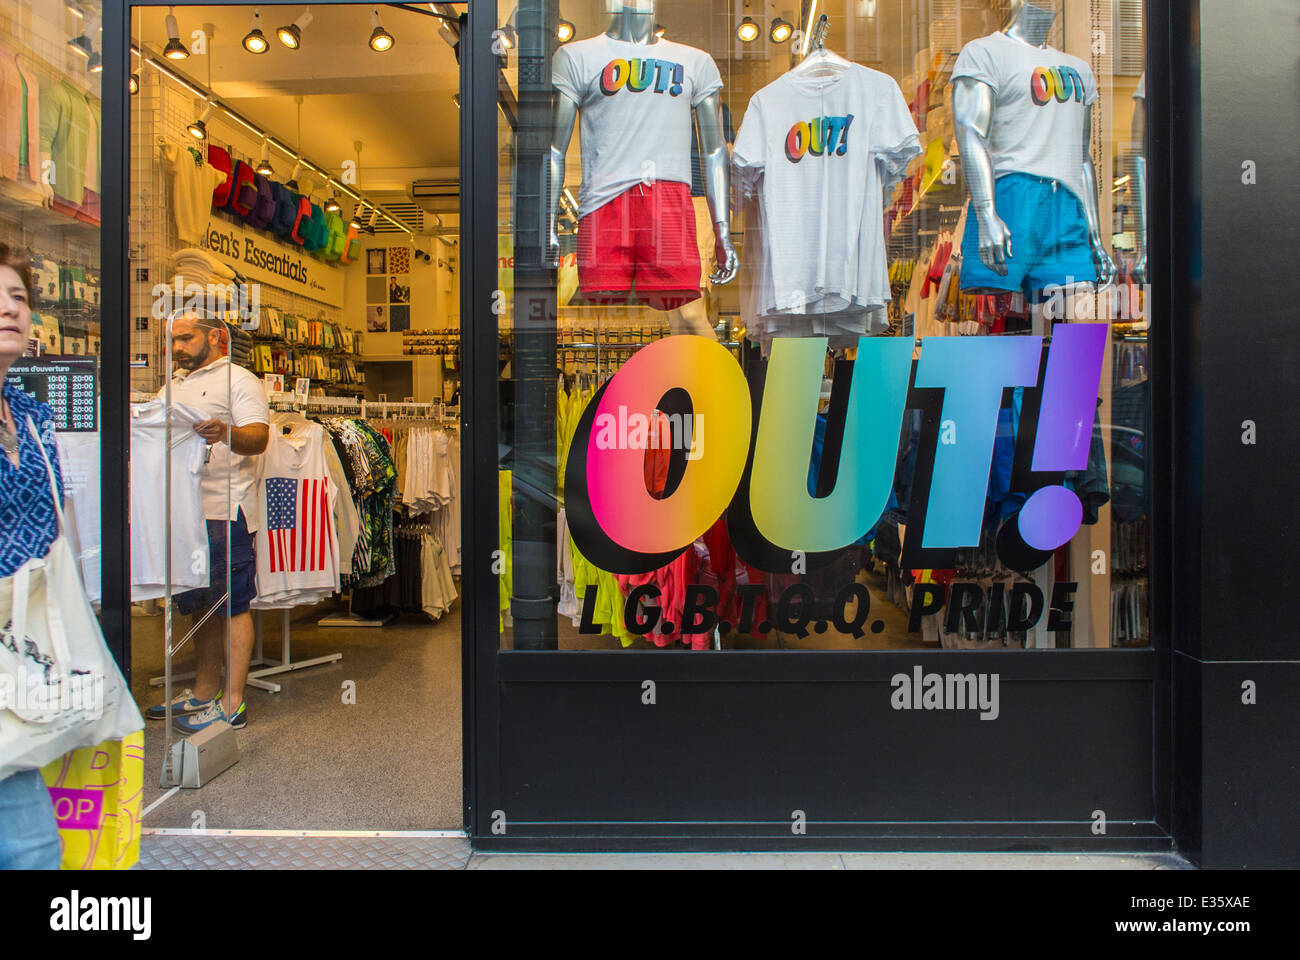 Paris, France, magasin de vêtements 'Amercian appareil', avec le marketing gay Pride signer le quartier gay du Marais, magasins, publicité LGBT Banque D'Images